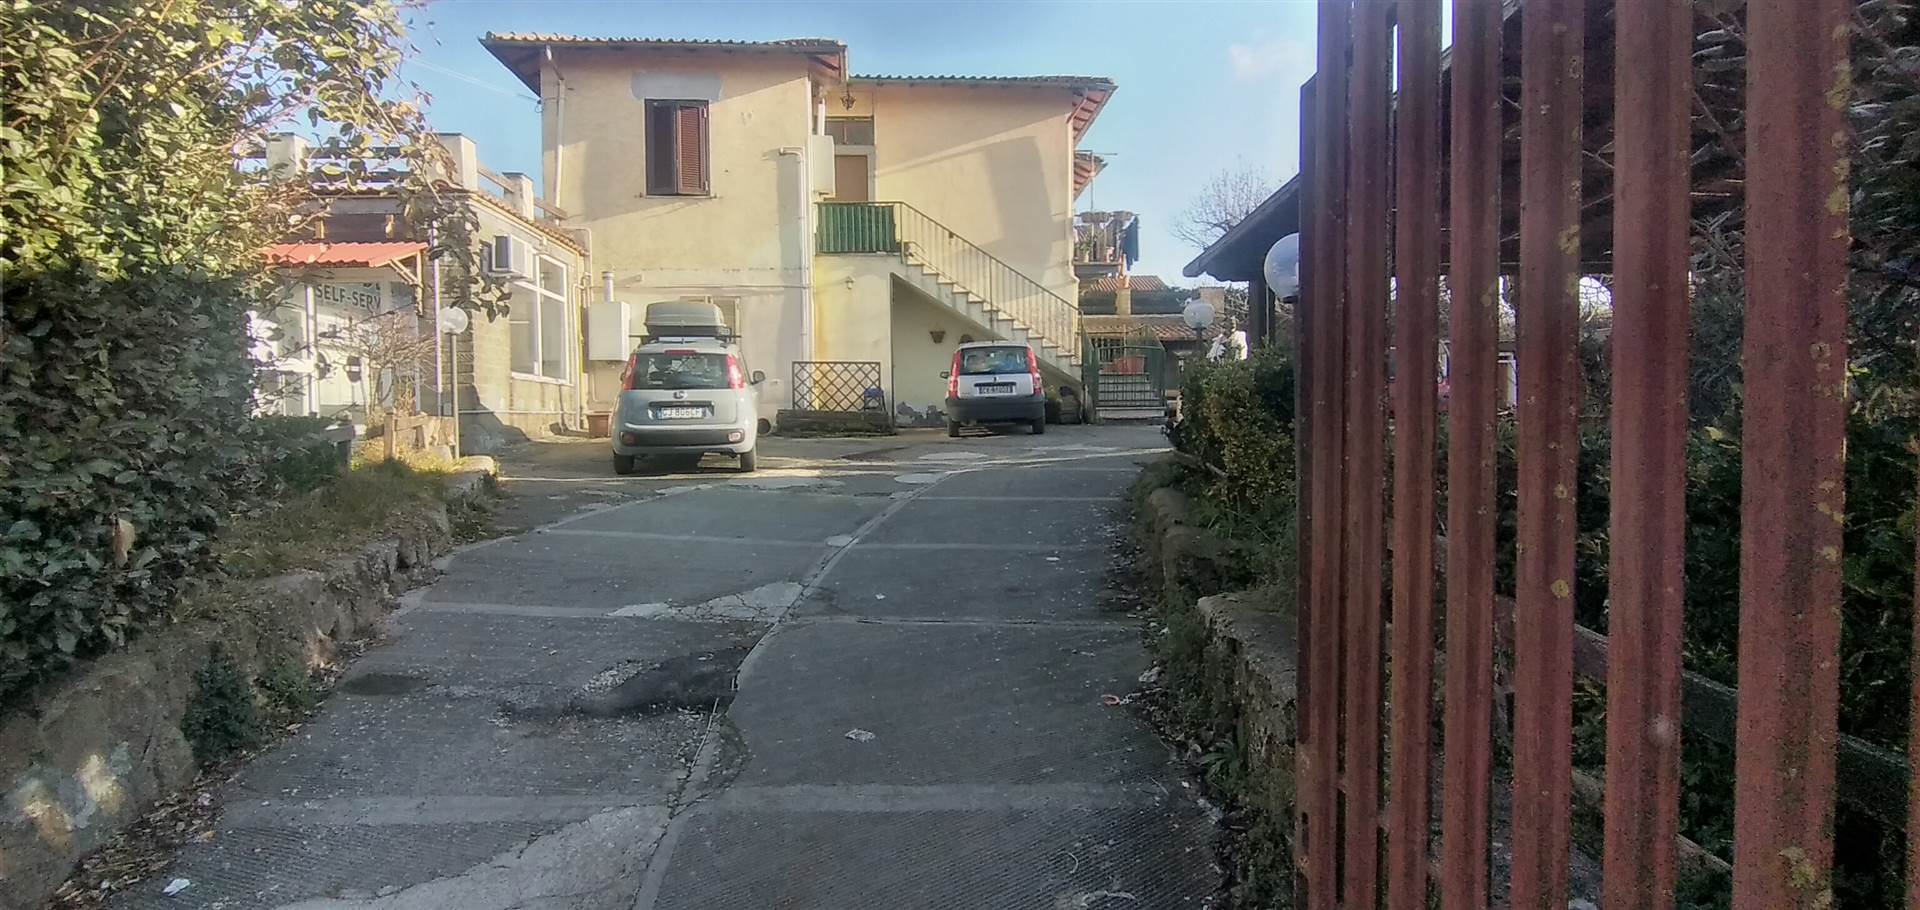 Appartamento in vendita a Rocca di Papa, 5 locali, zona Località: DOMATORE, prezzo € 125.000 | PortaleAgenzieImmobiliari.it